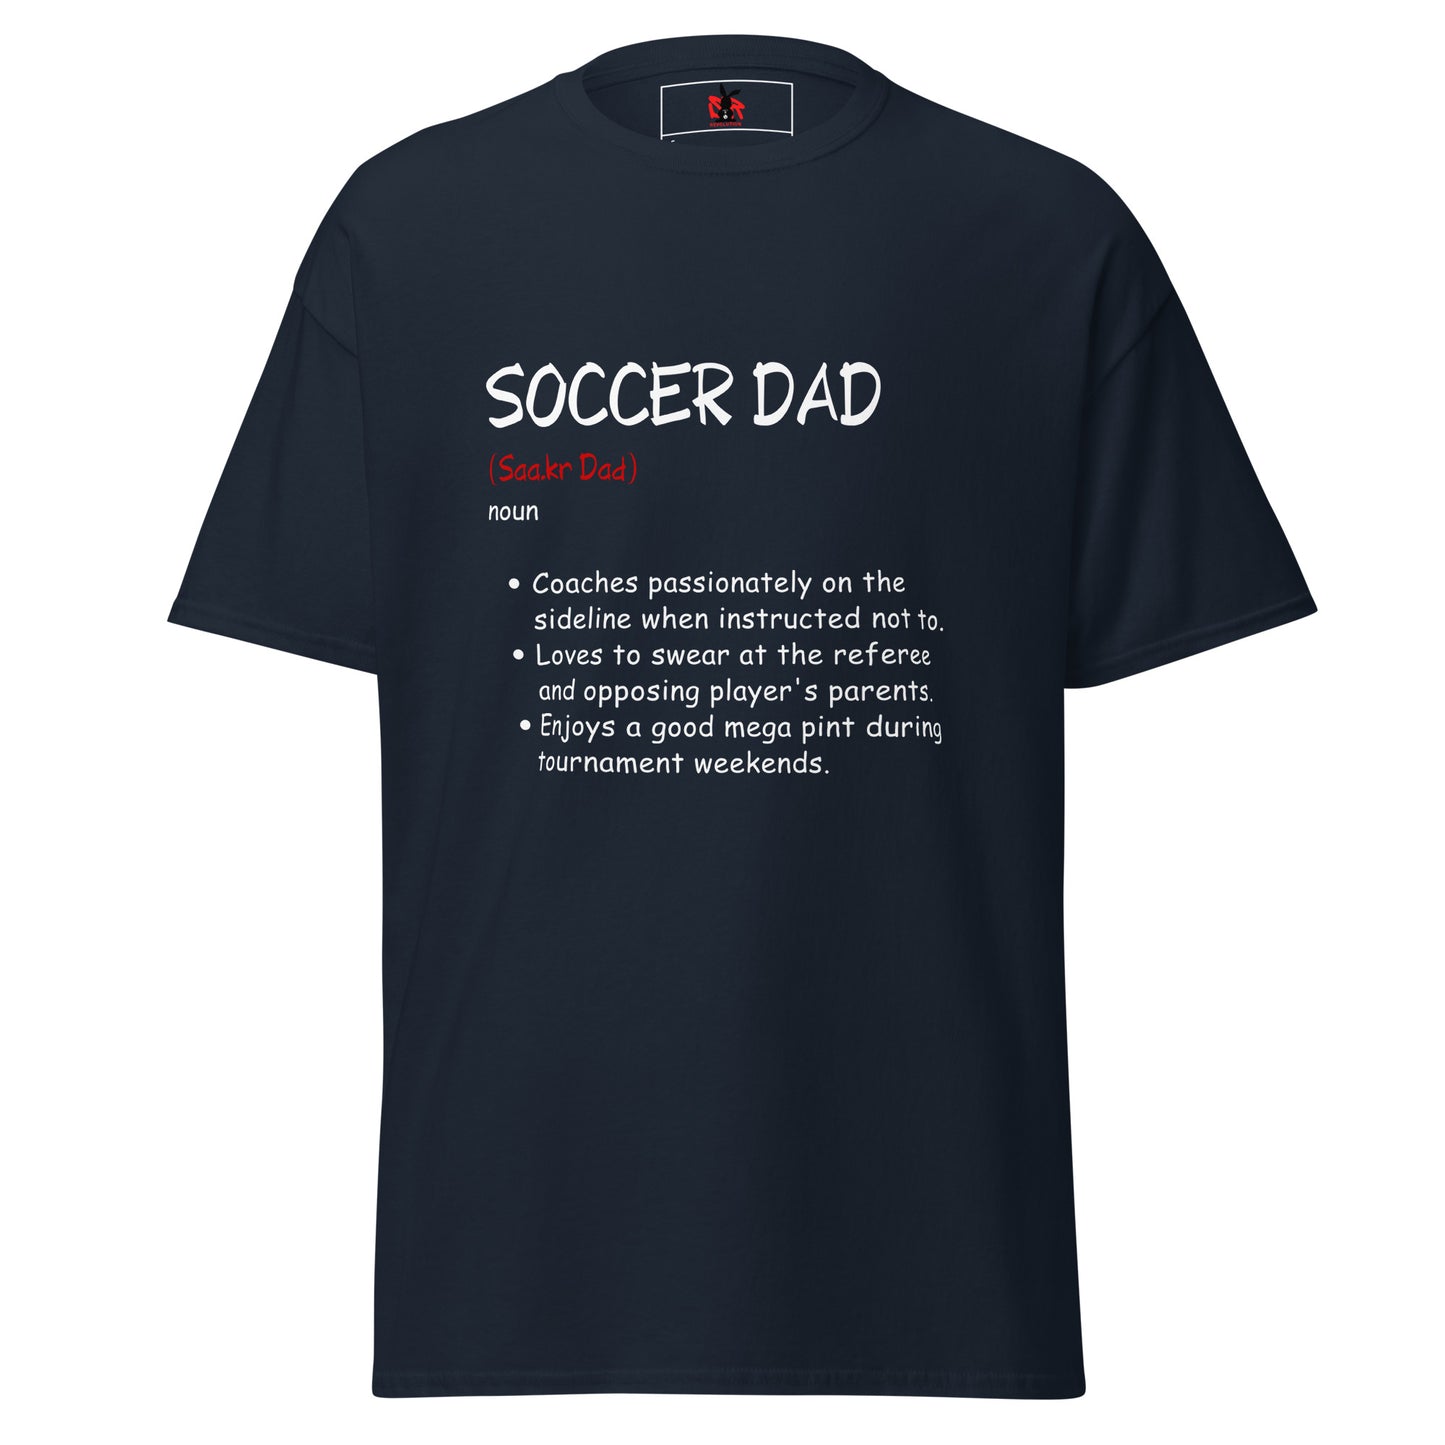 Soccer Dad (noun)